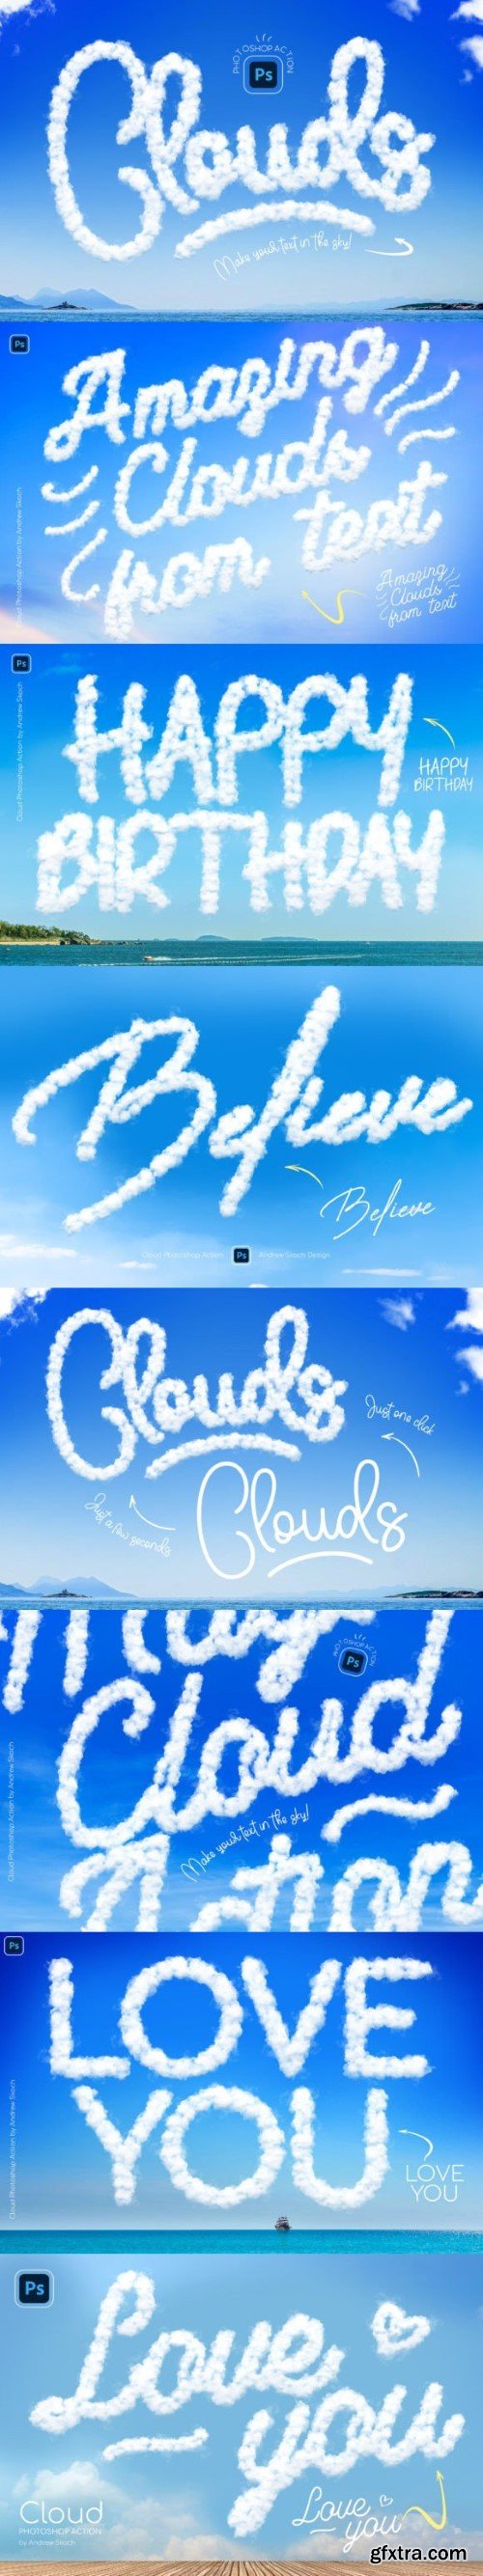 Cloud Photoshop Action